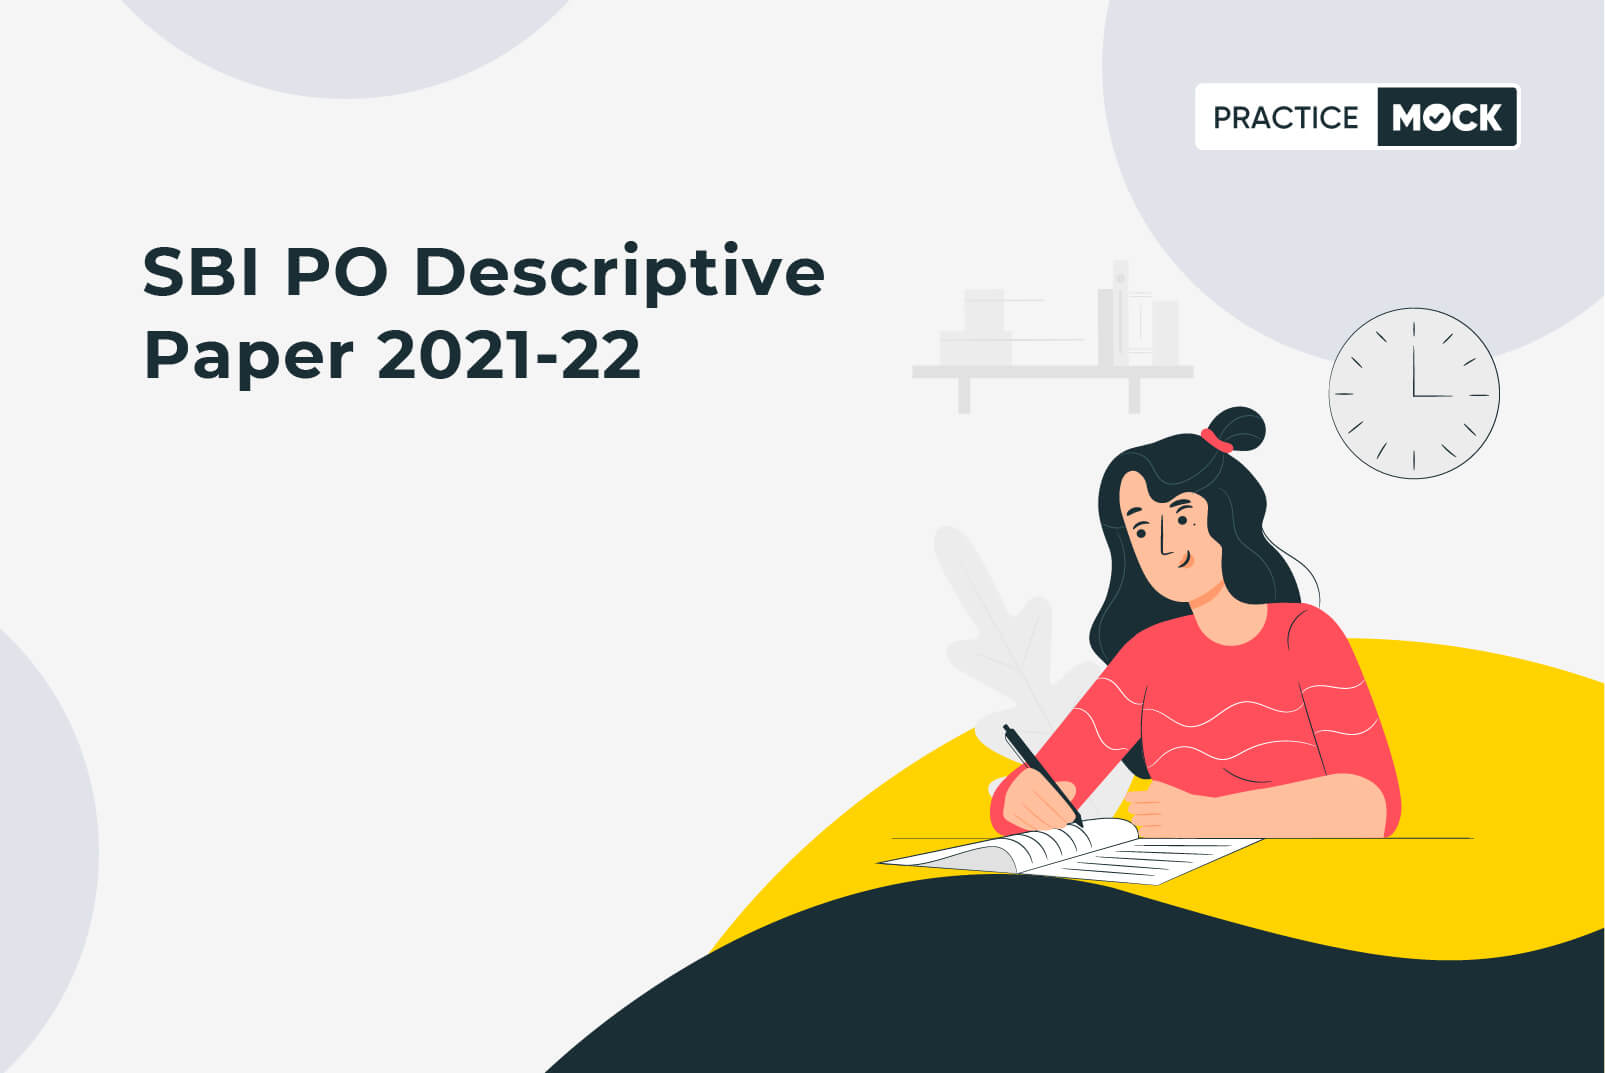 SBI PO Descriptive Paper 2021-22